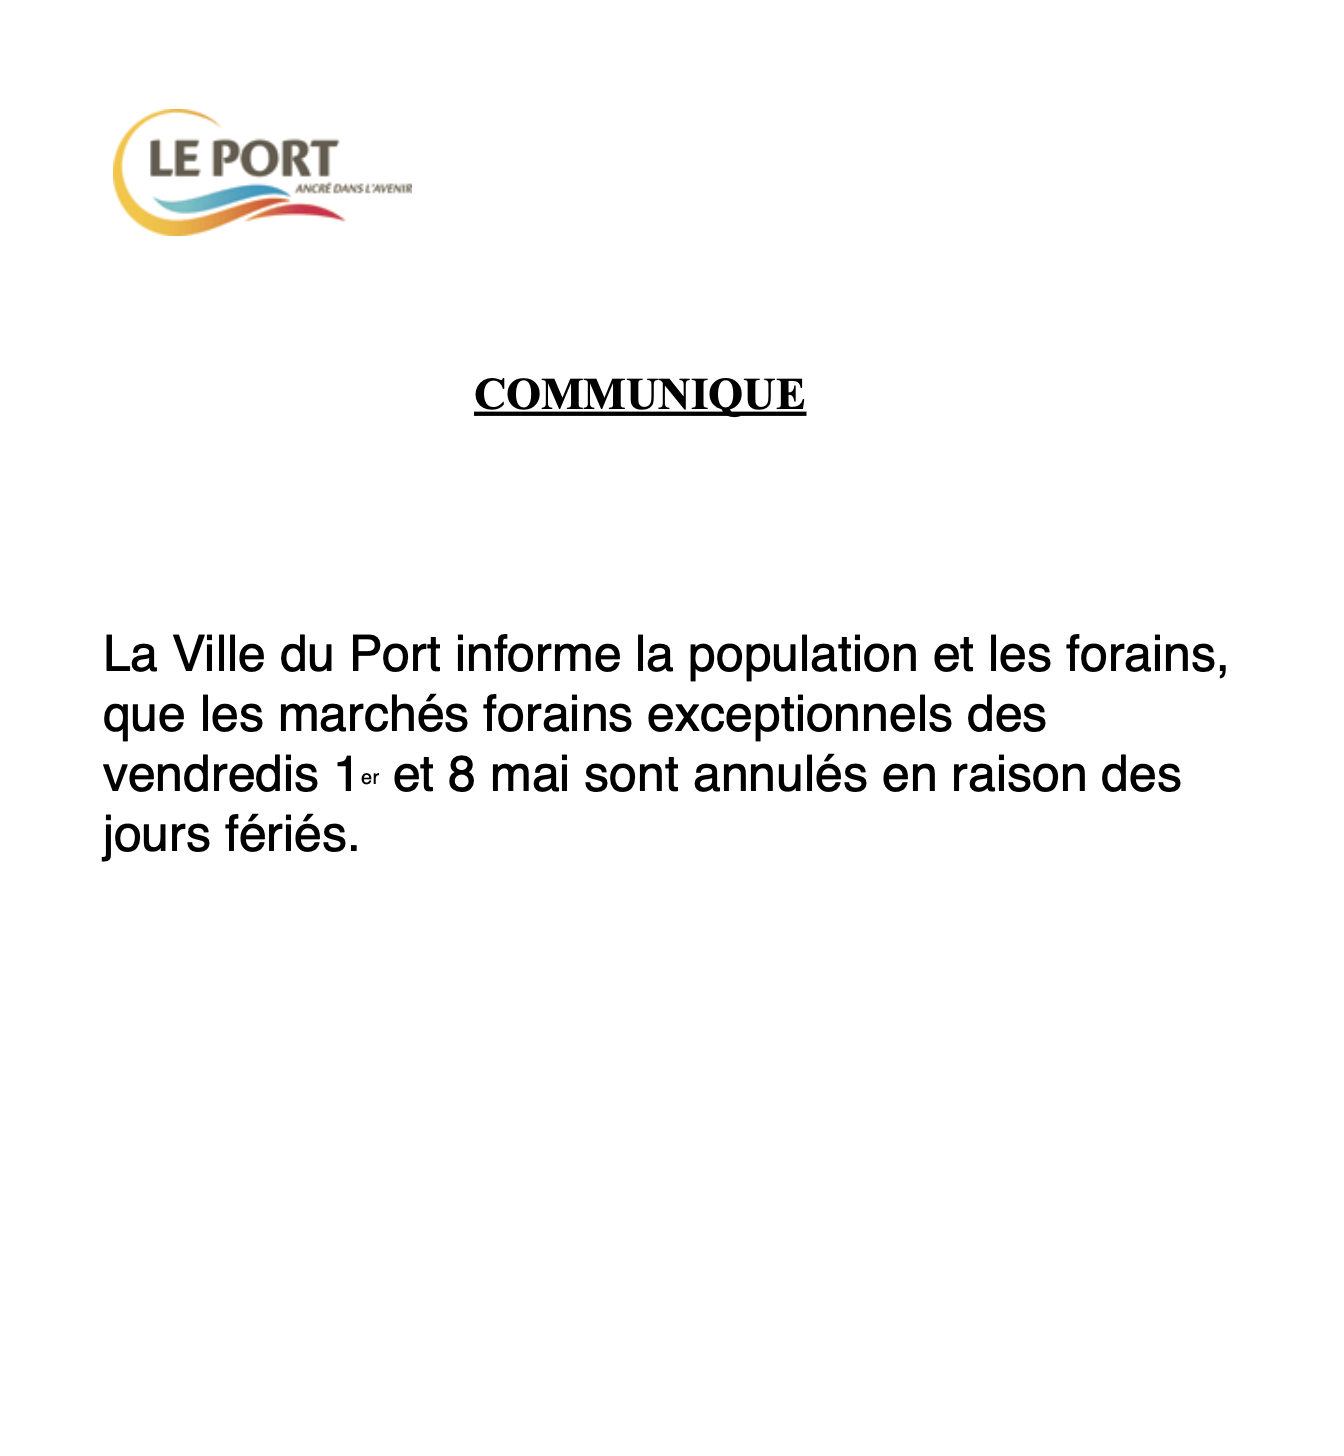 Le Port : Annulation des marchés forains le 1er et 8 mai